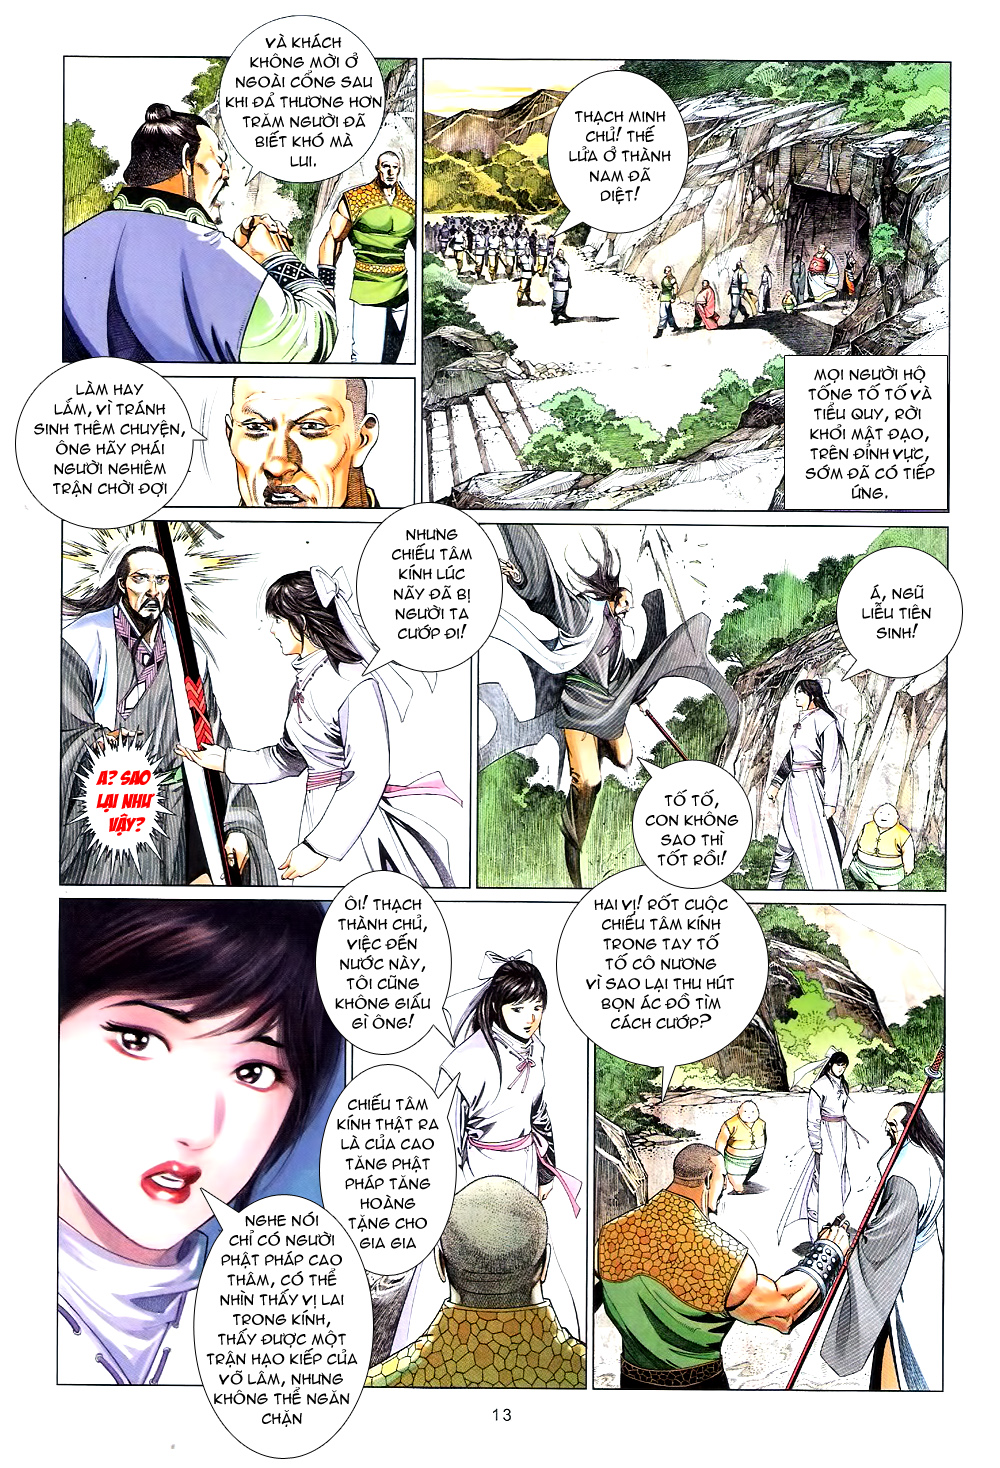 Phong Vân chap 589 trang 13